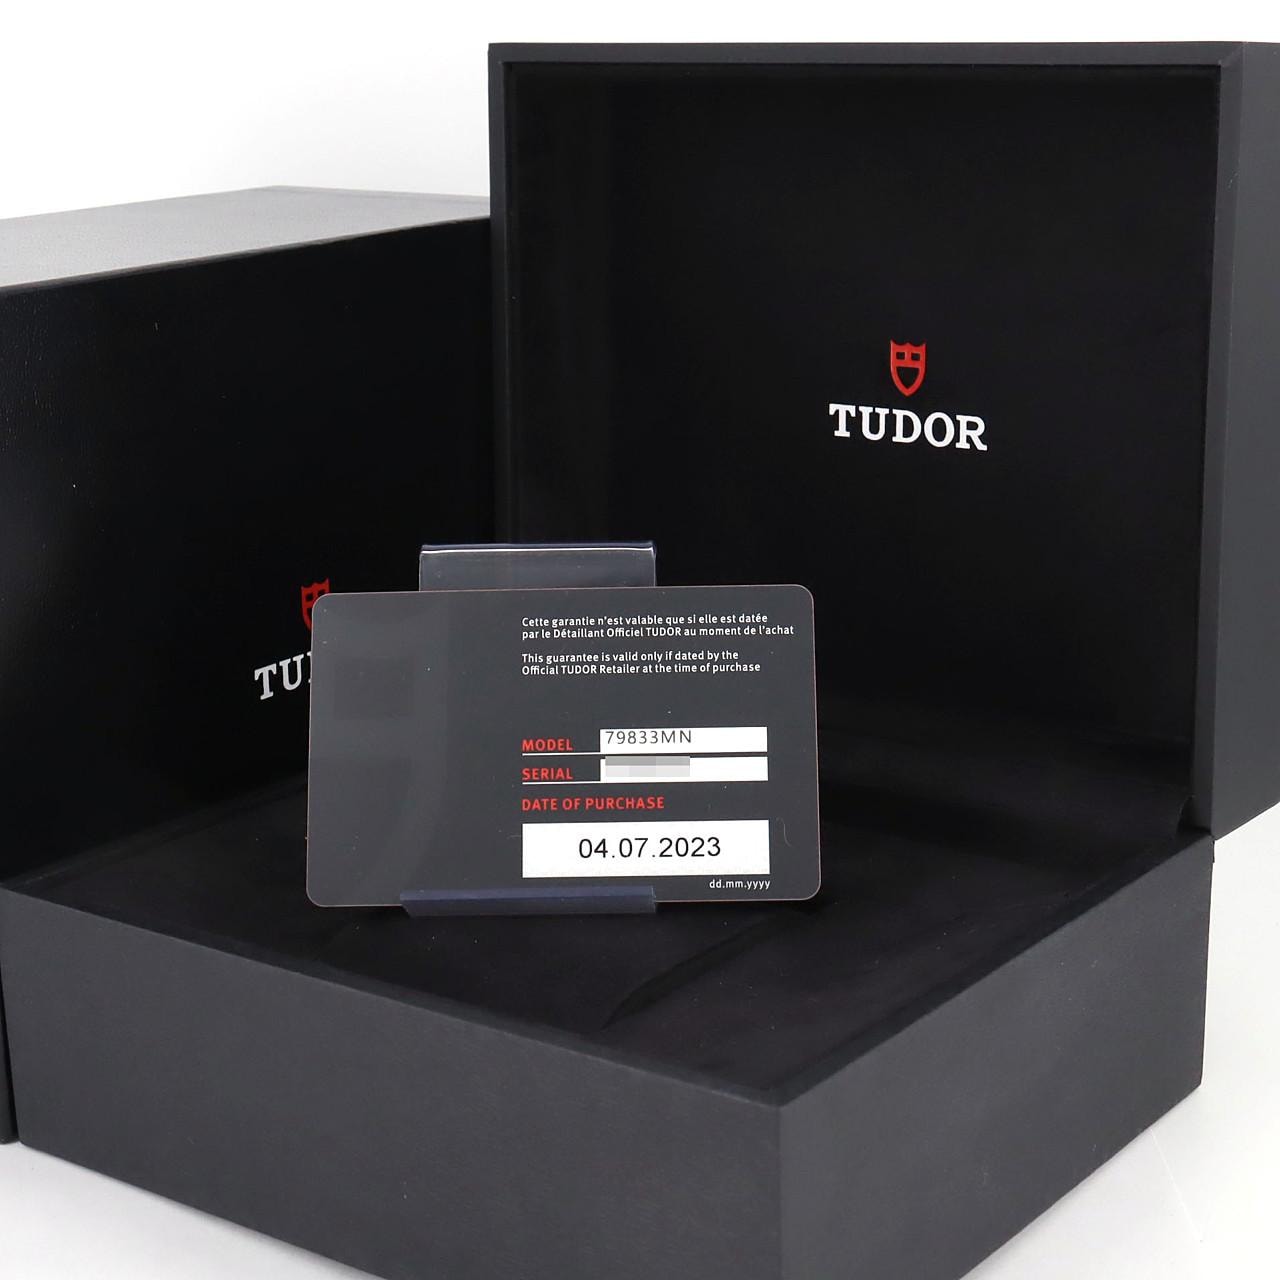 Tudor/Tudor Black Bay GMT S&G M79833MN-0001 SSxYG Automatic